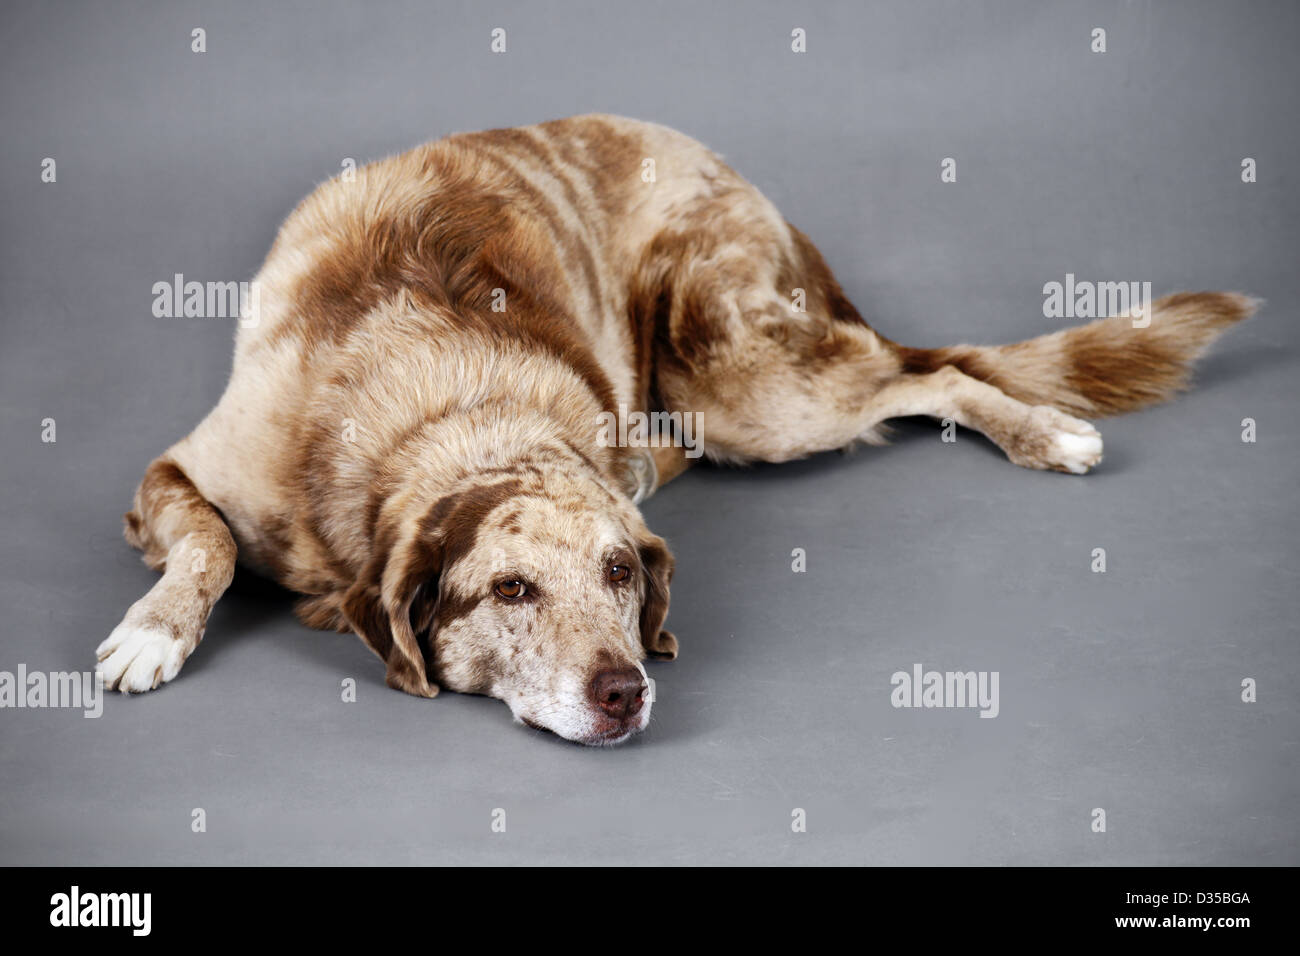 Mignon et drôle à grand chien brun tacheté, de repos pourrait être fatigué, vieux, malades ou blessés. Banque D'Images